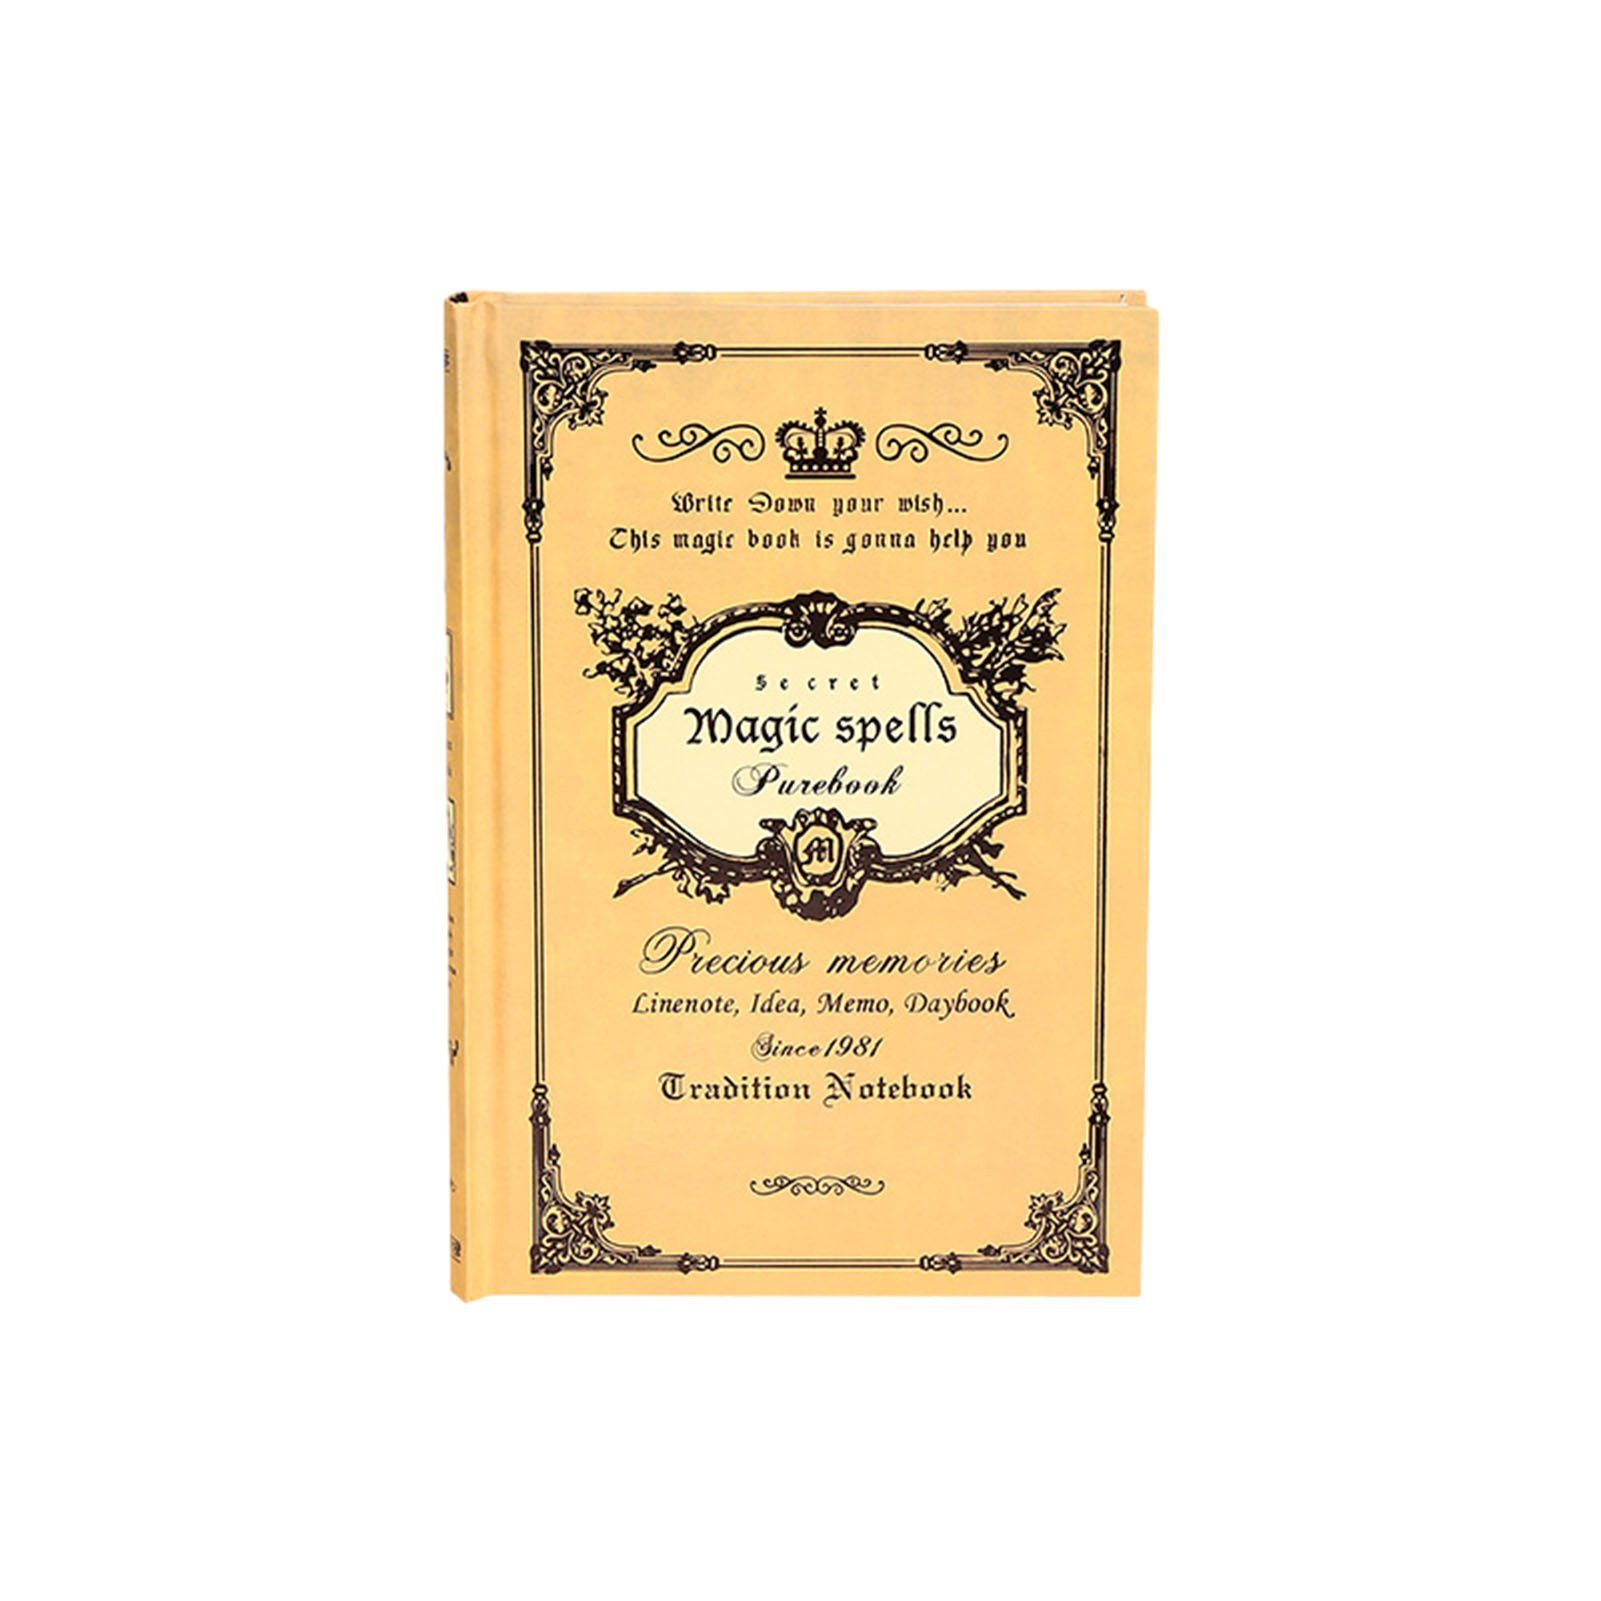 Vintage-Stil Vielseitig Einsetzbar, Für Notizbuch Blusmart Studenten, A5-Notizbuch yellow Im Tagebuch